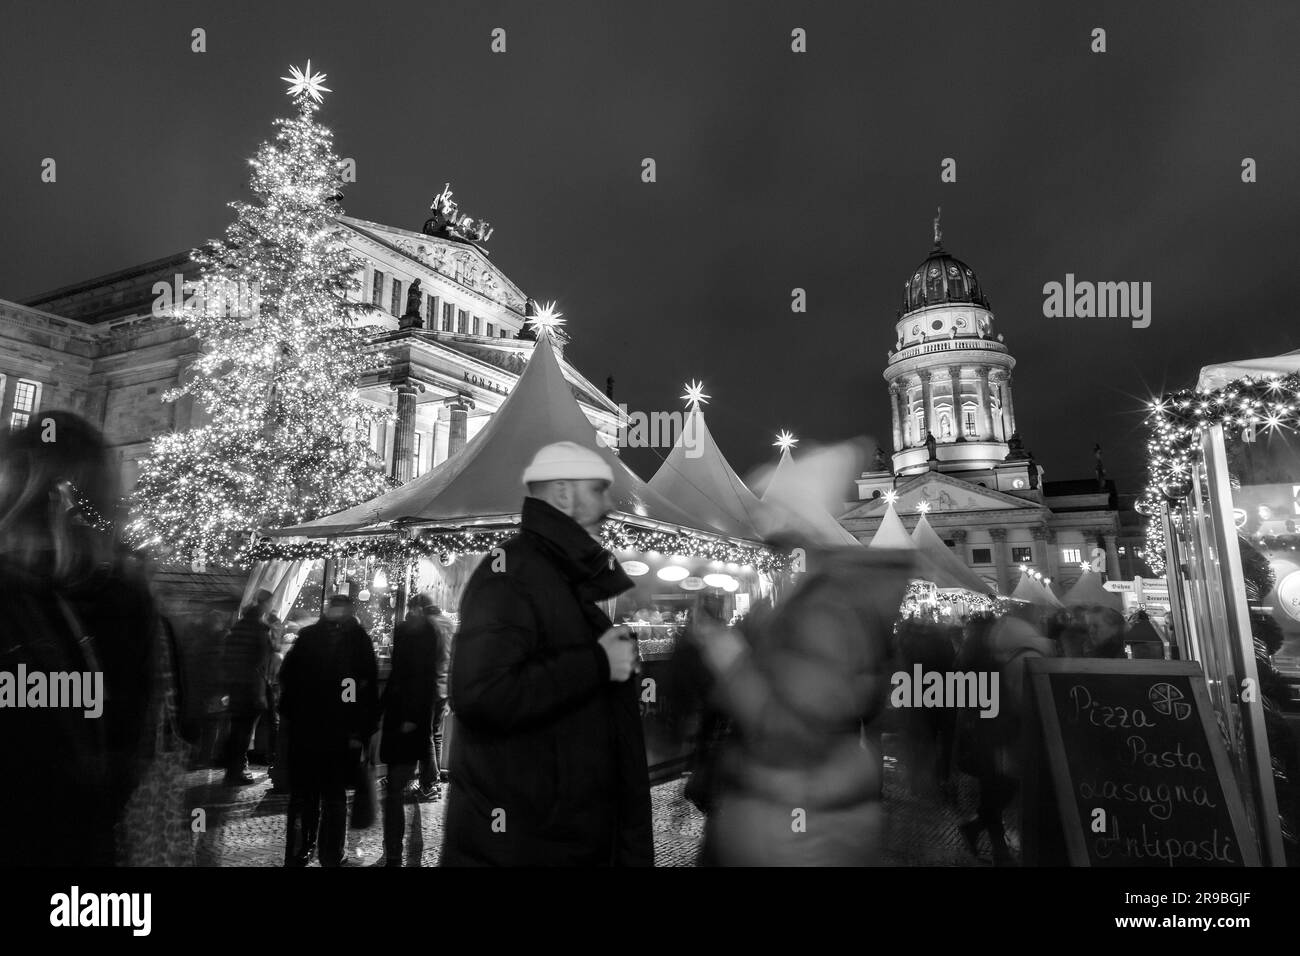 Berlino, Germania - 17 dicembre 2021: Il famoso mercatino di natale al Gendarmentmarkt di Berlino. Weichnachts Zauber significa magia della notte di Natale. Foto Stock